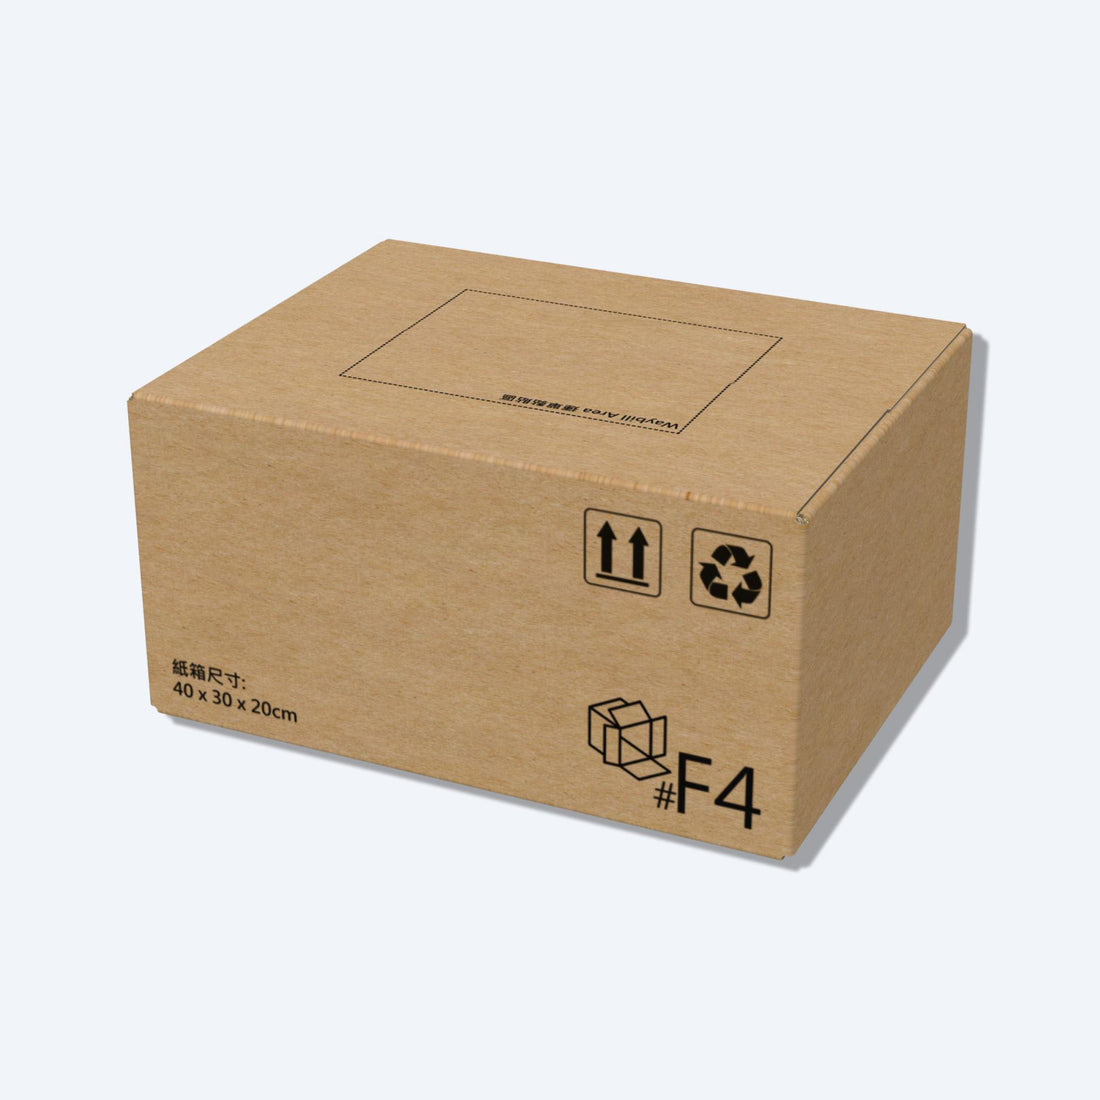 順豐速運F4尺寸紙箱側視圖，展示尺寸和質感，是適合中型物品運輸的理想選擇。